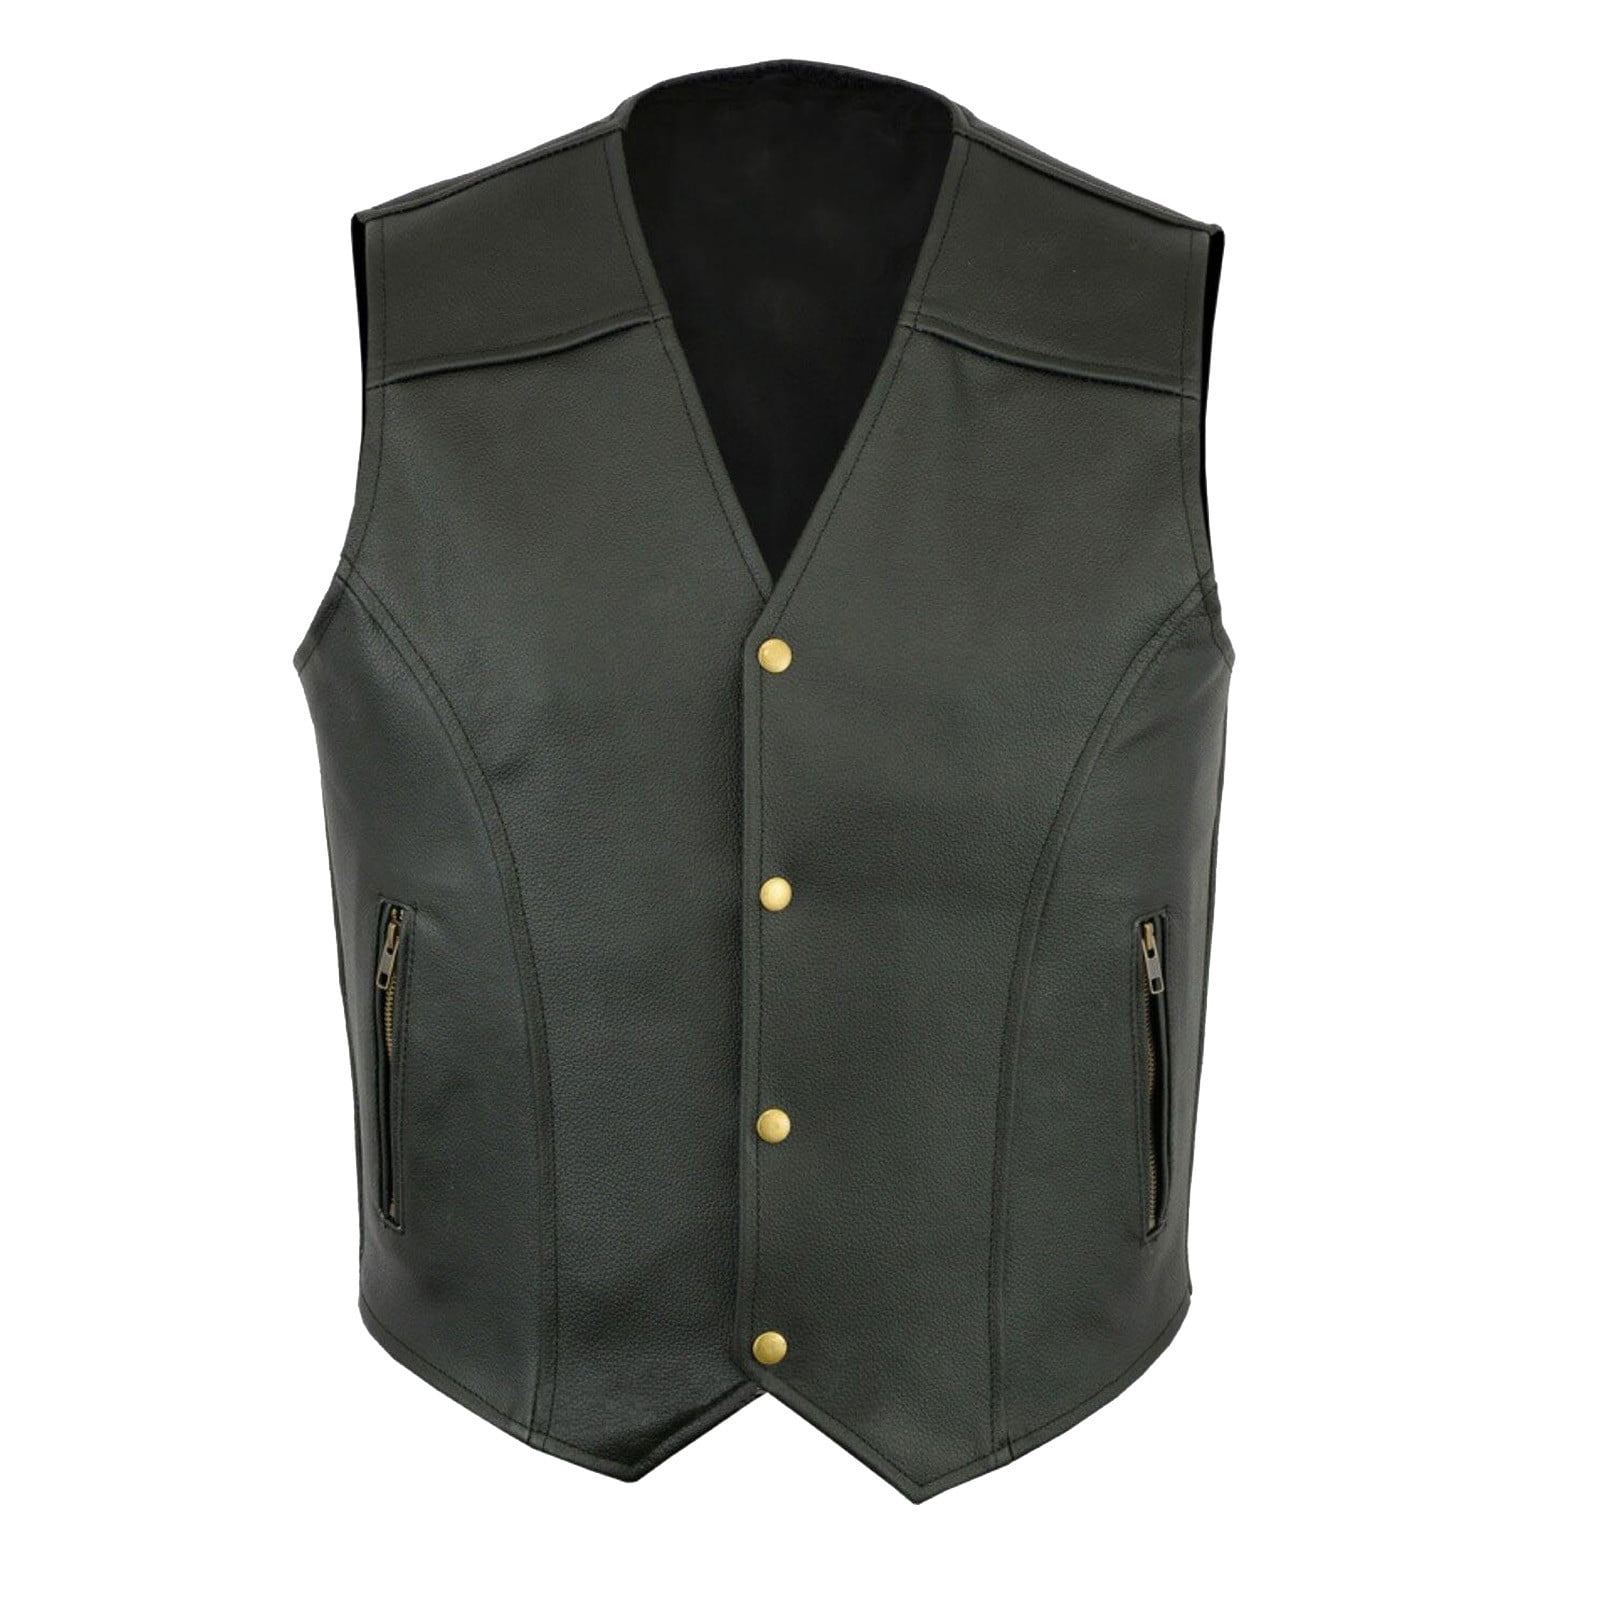 Entyinea Work Vest for Men with Pockets Full Zipper Casual Outdoor Vest ...